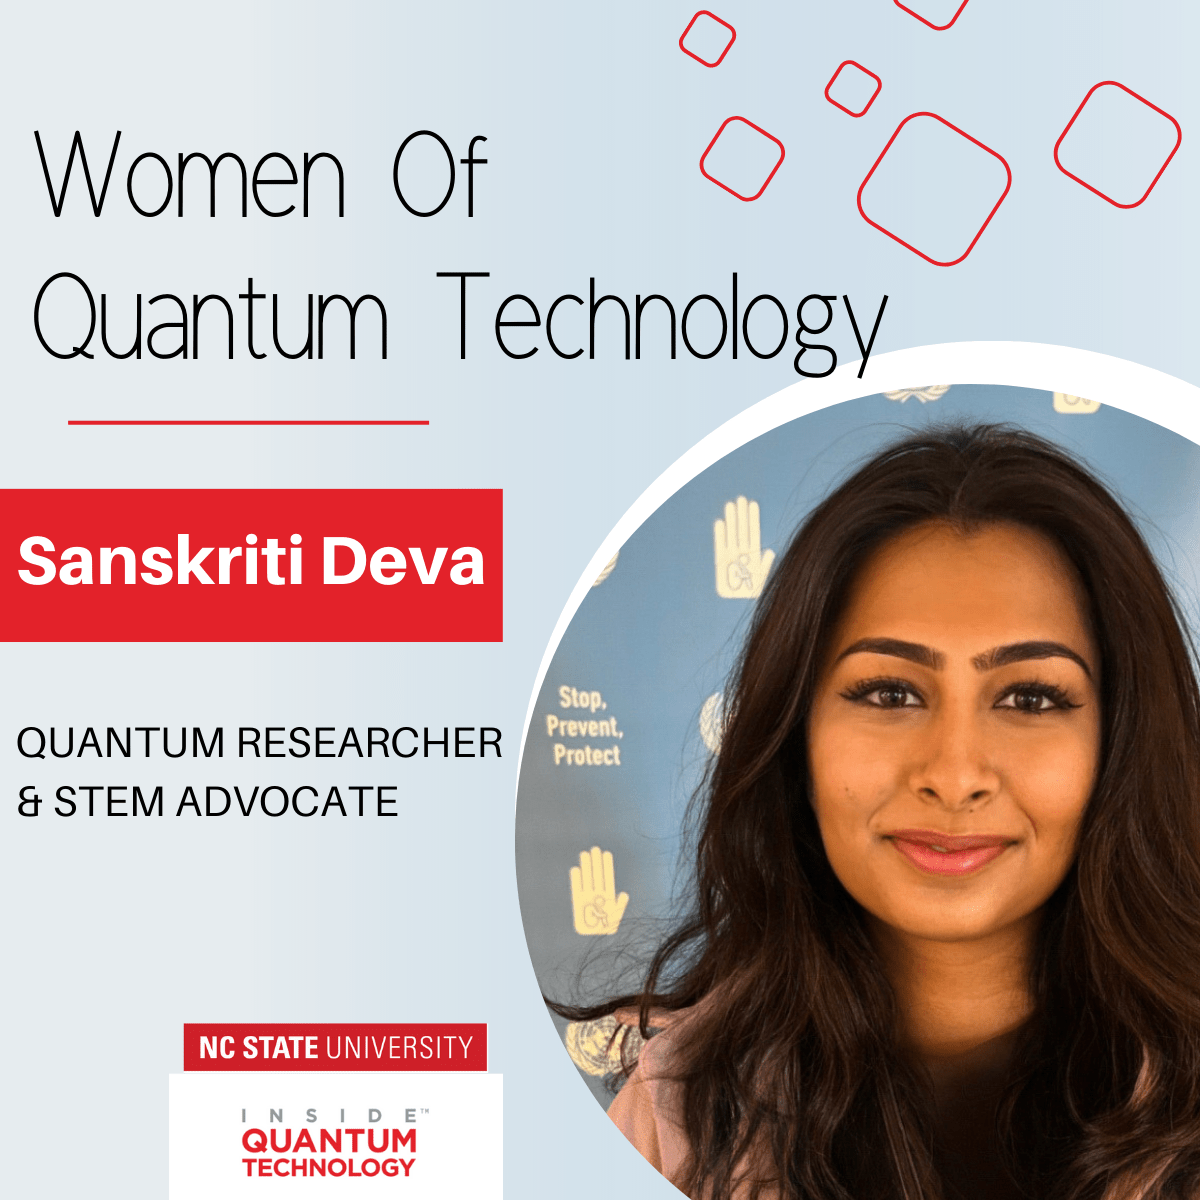 Donne quantistiche: Sanskriti Deva, ingegnere quantistico e la più giovane rappresentante eletta delle Nazioni Unite - Inside Quantum Technology